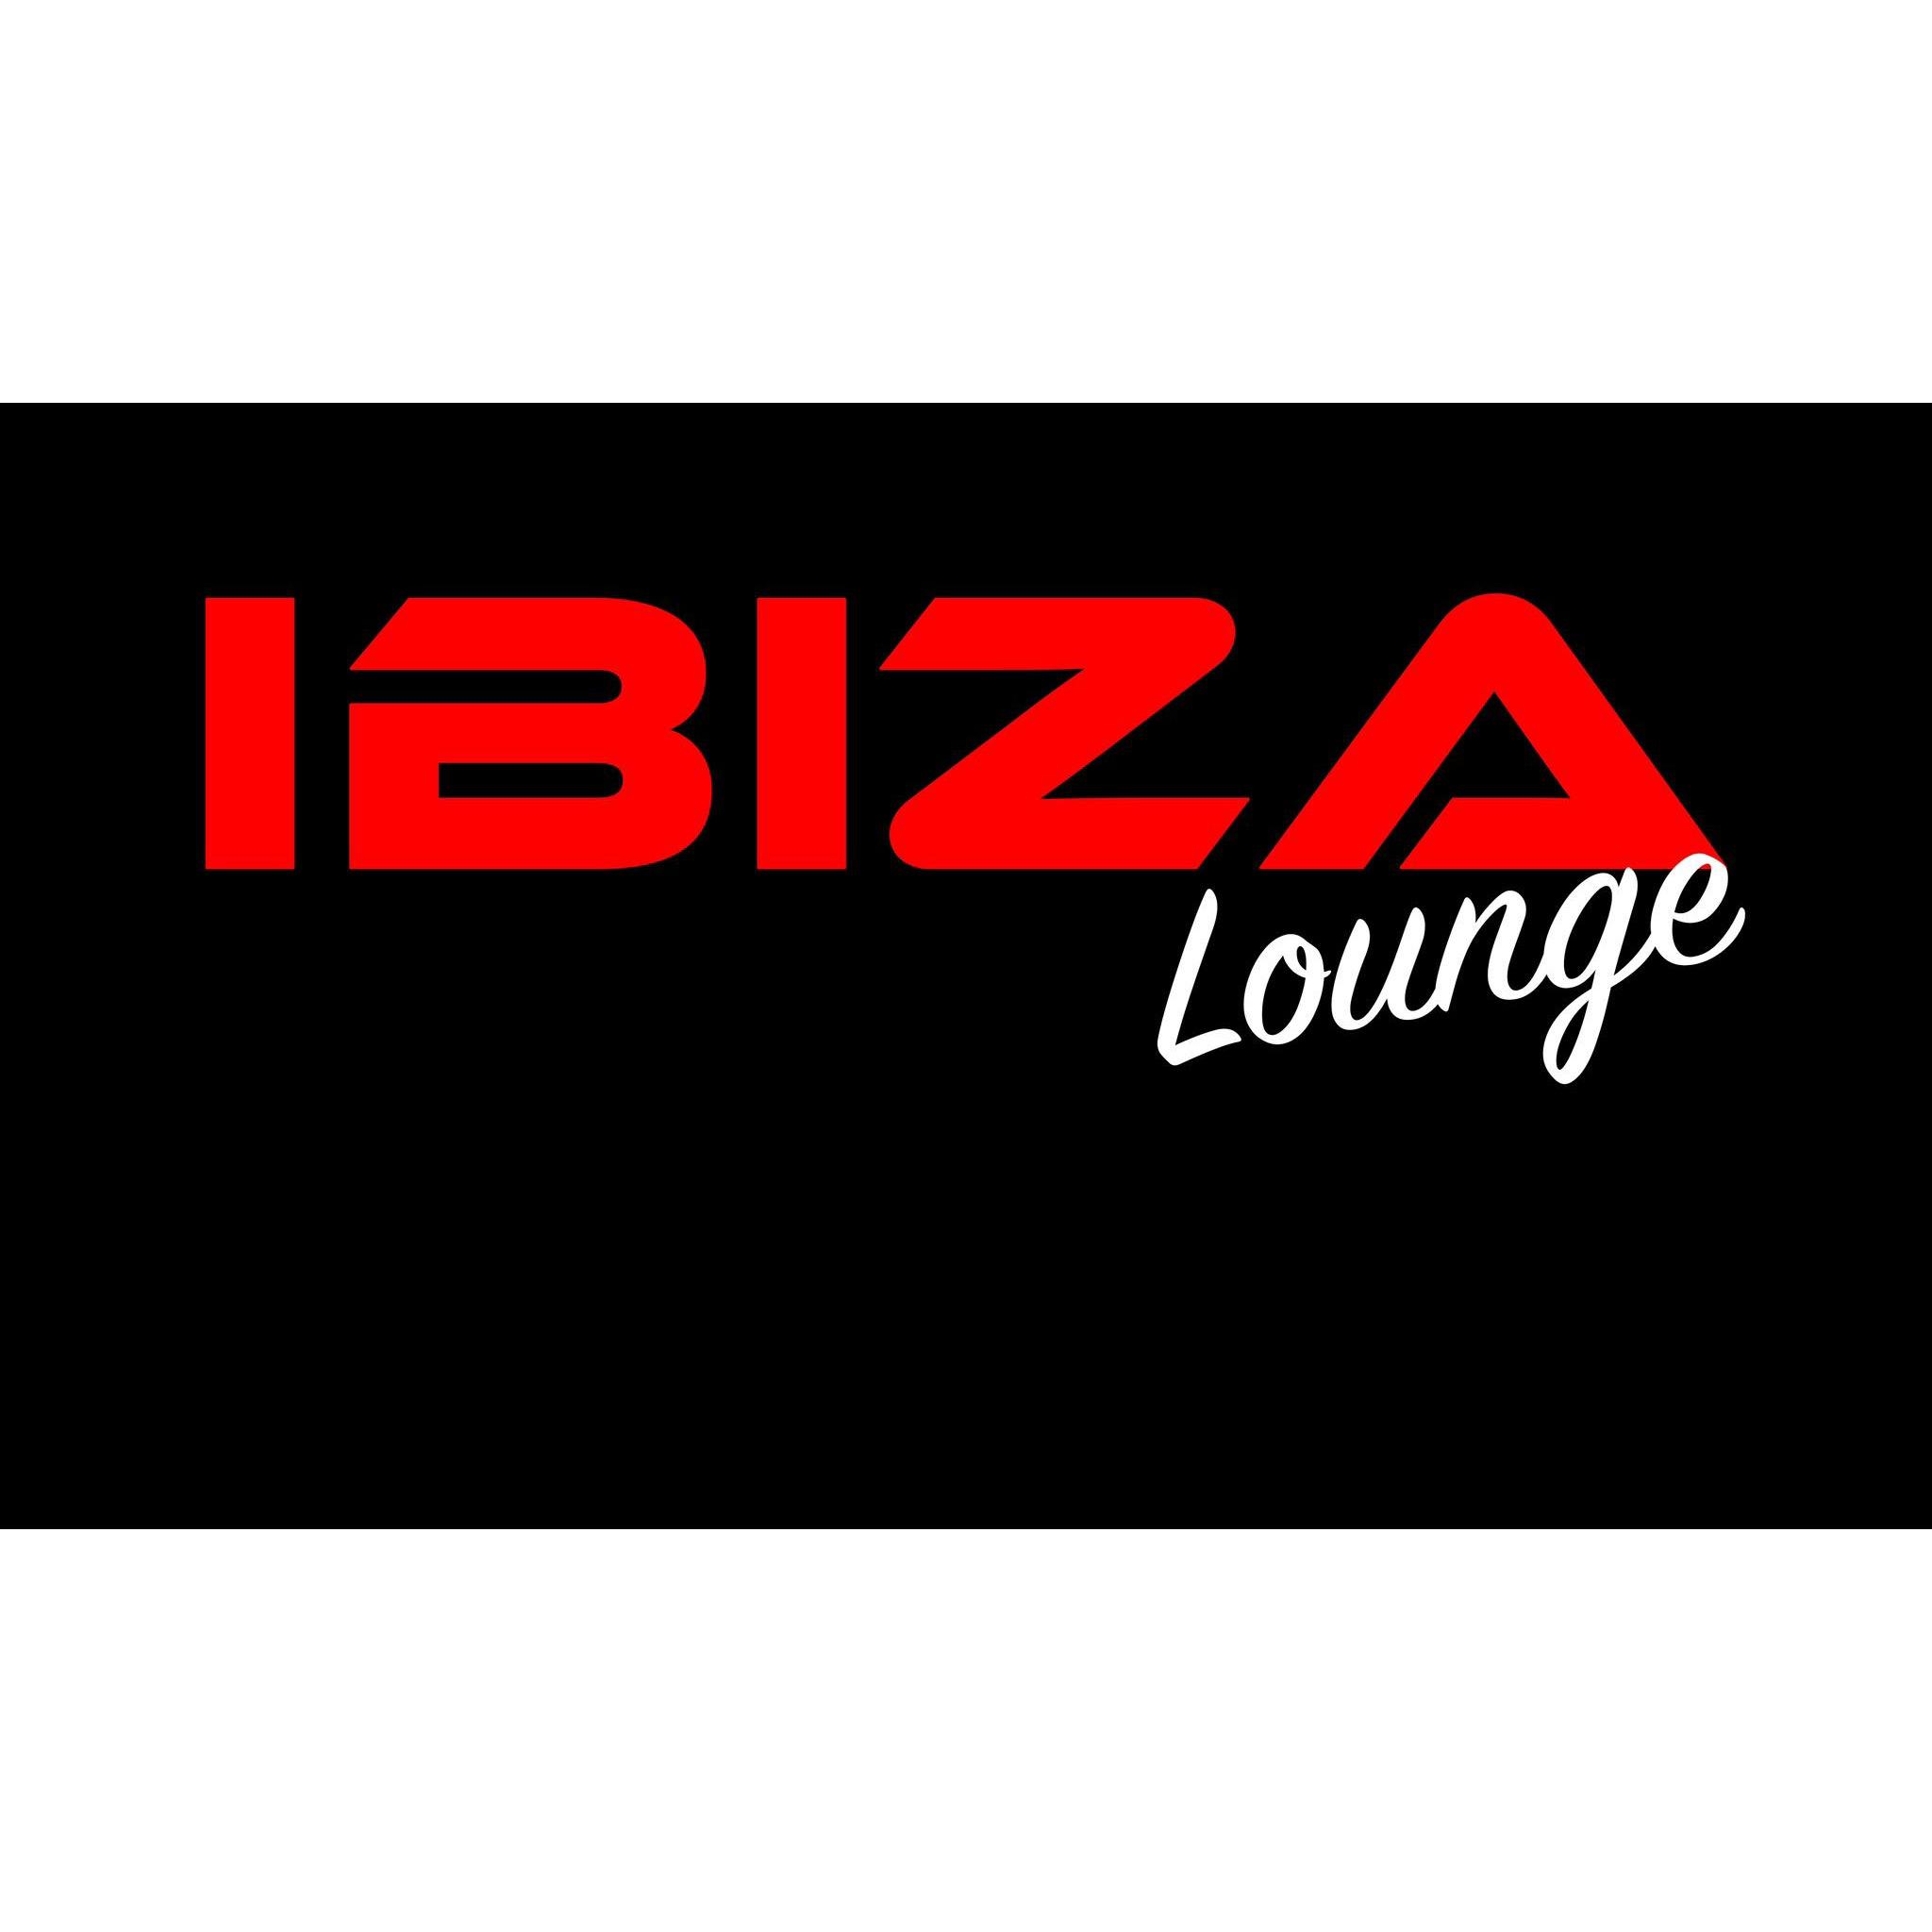 Ibiza Lounge - Nashville, TN 37211 - (615)589-1588 | ShowMeLocal.com